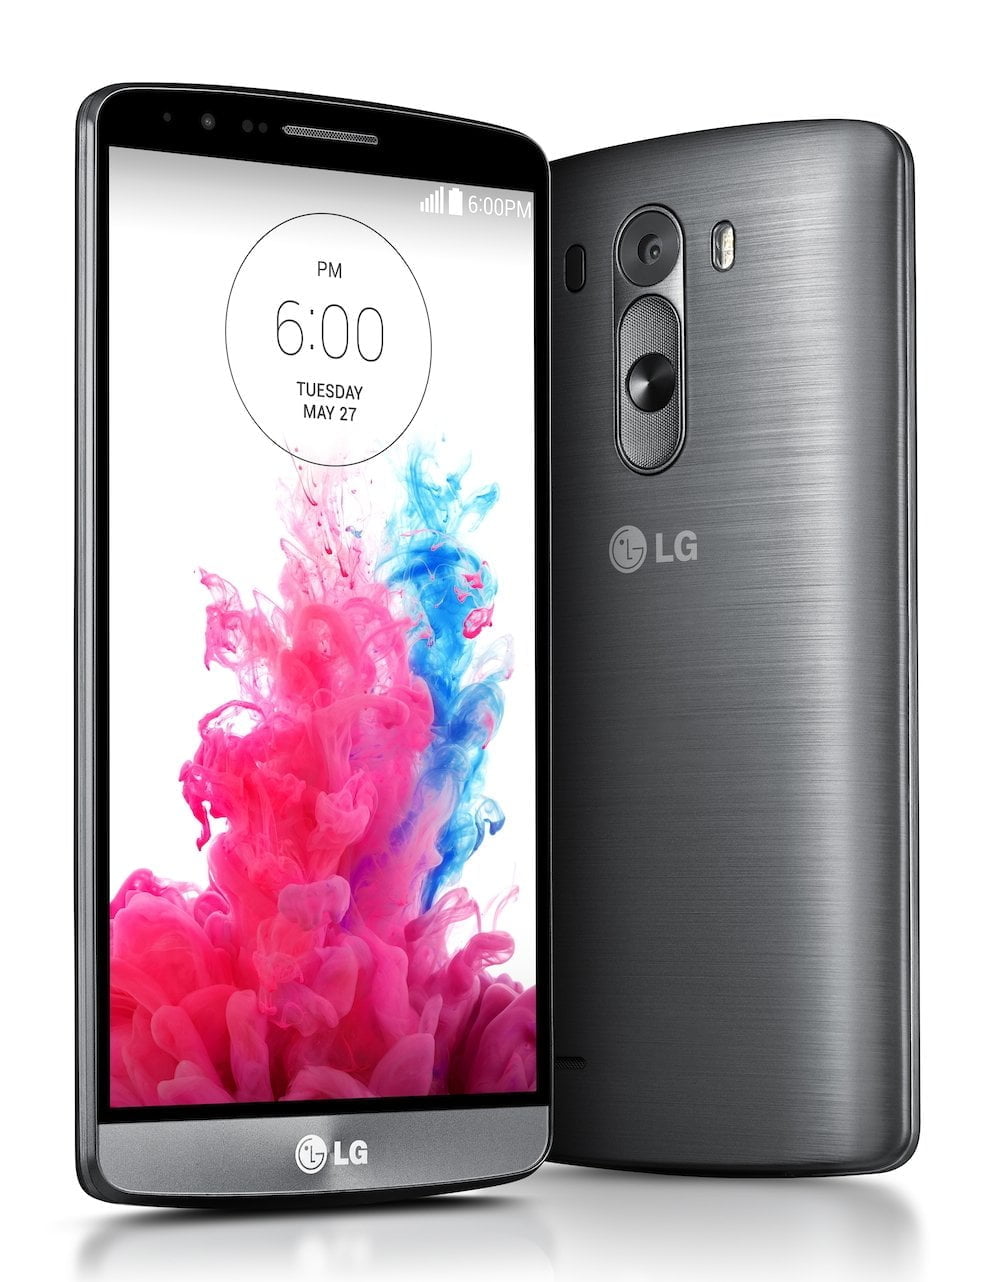 Spectaculair veel pixels in nieuw vlaggenschip van LG, de LG G3 8